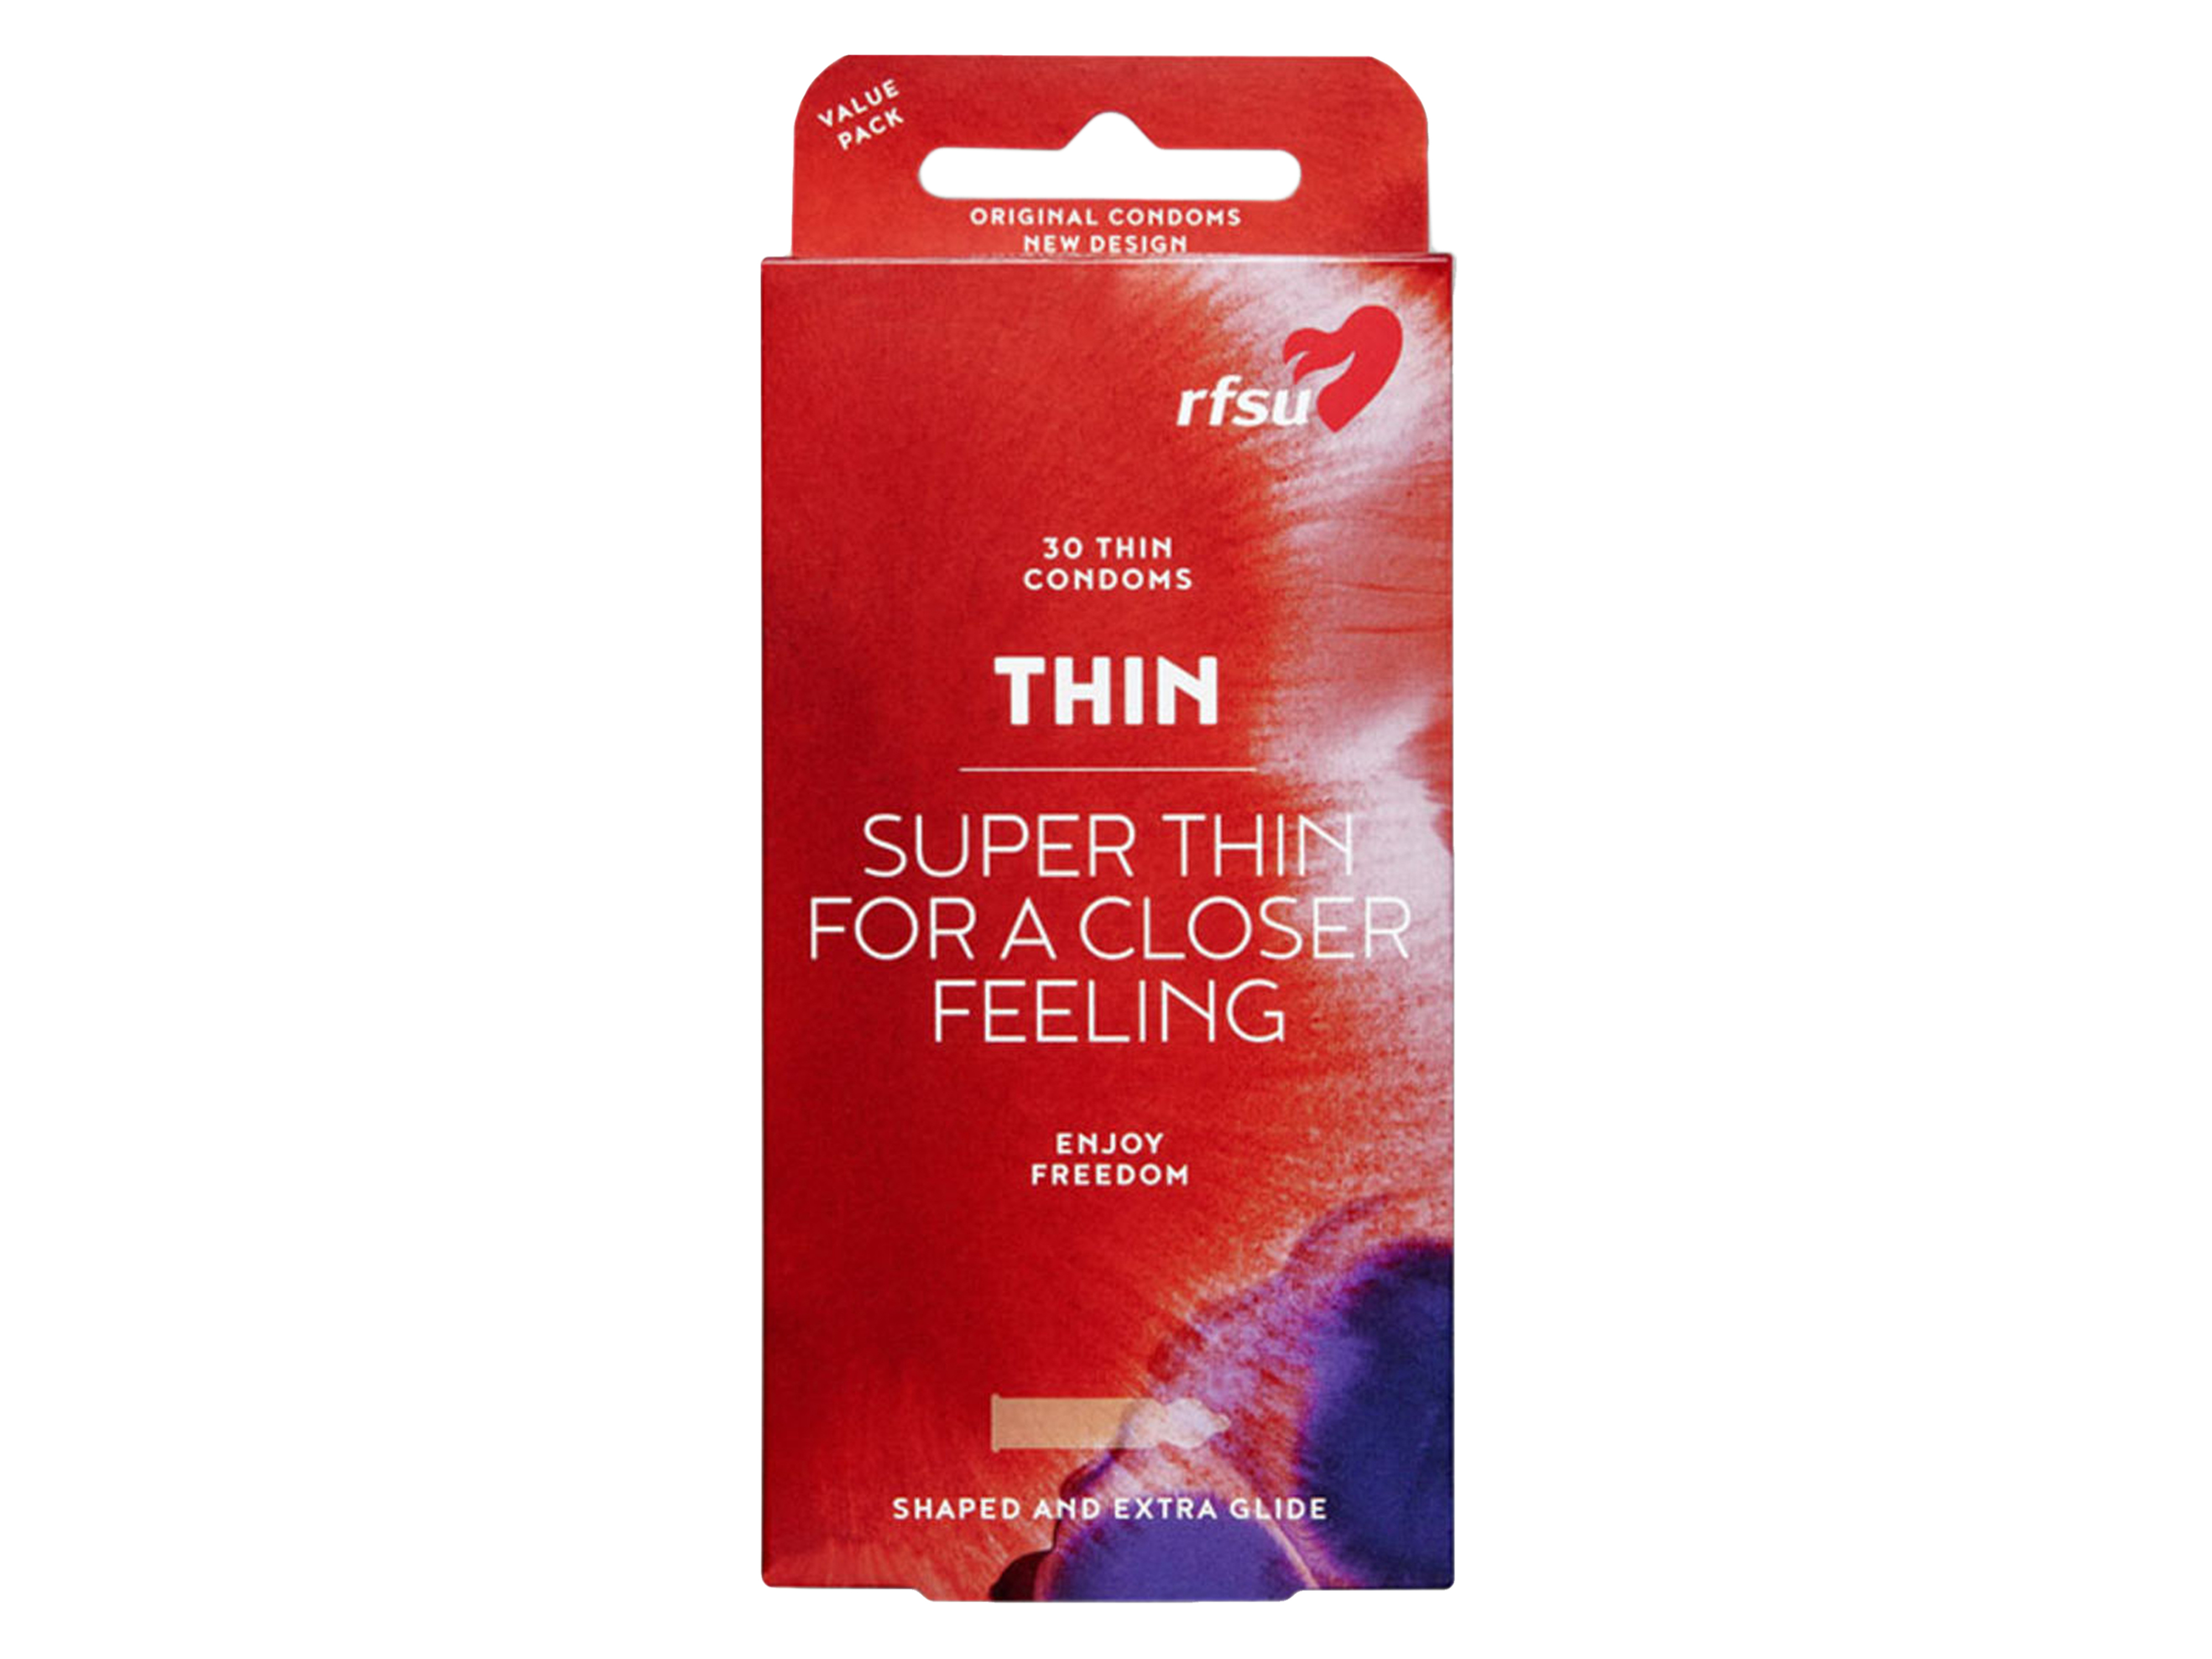 Rfsu Thin kondom, 30 stk